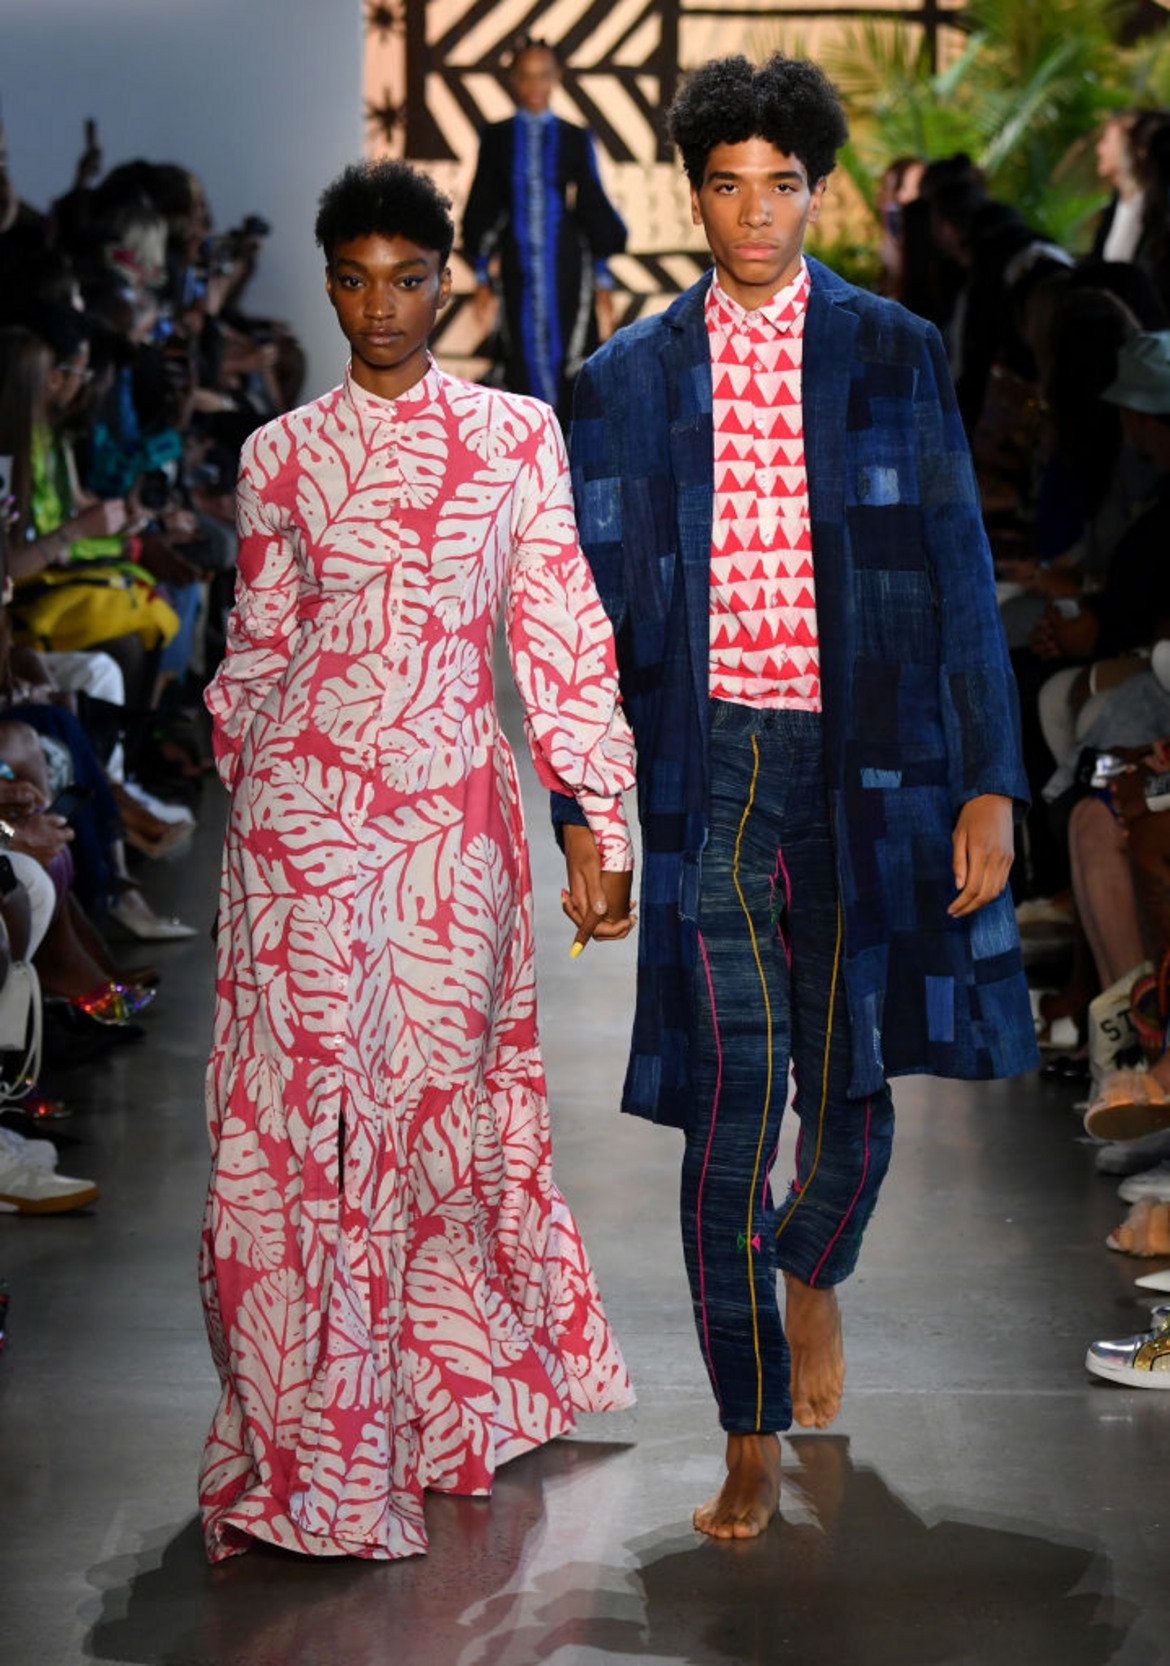  Афрополитан стил
Последните 10 години отбелязаха ускорена глобализация в модата. Дизайнери, особено от Африка, бяха забелязани заради автентичния им стил, като обединяваха традиционен текстил със съвременни идеи.